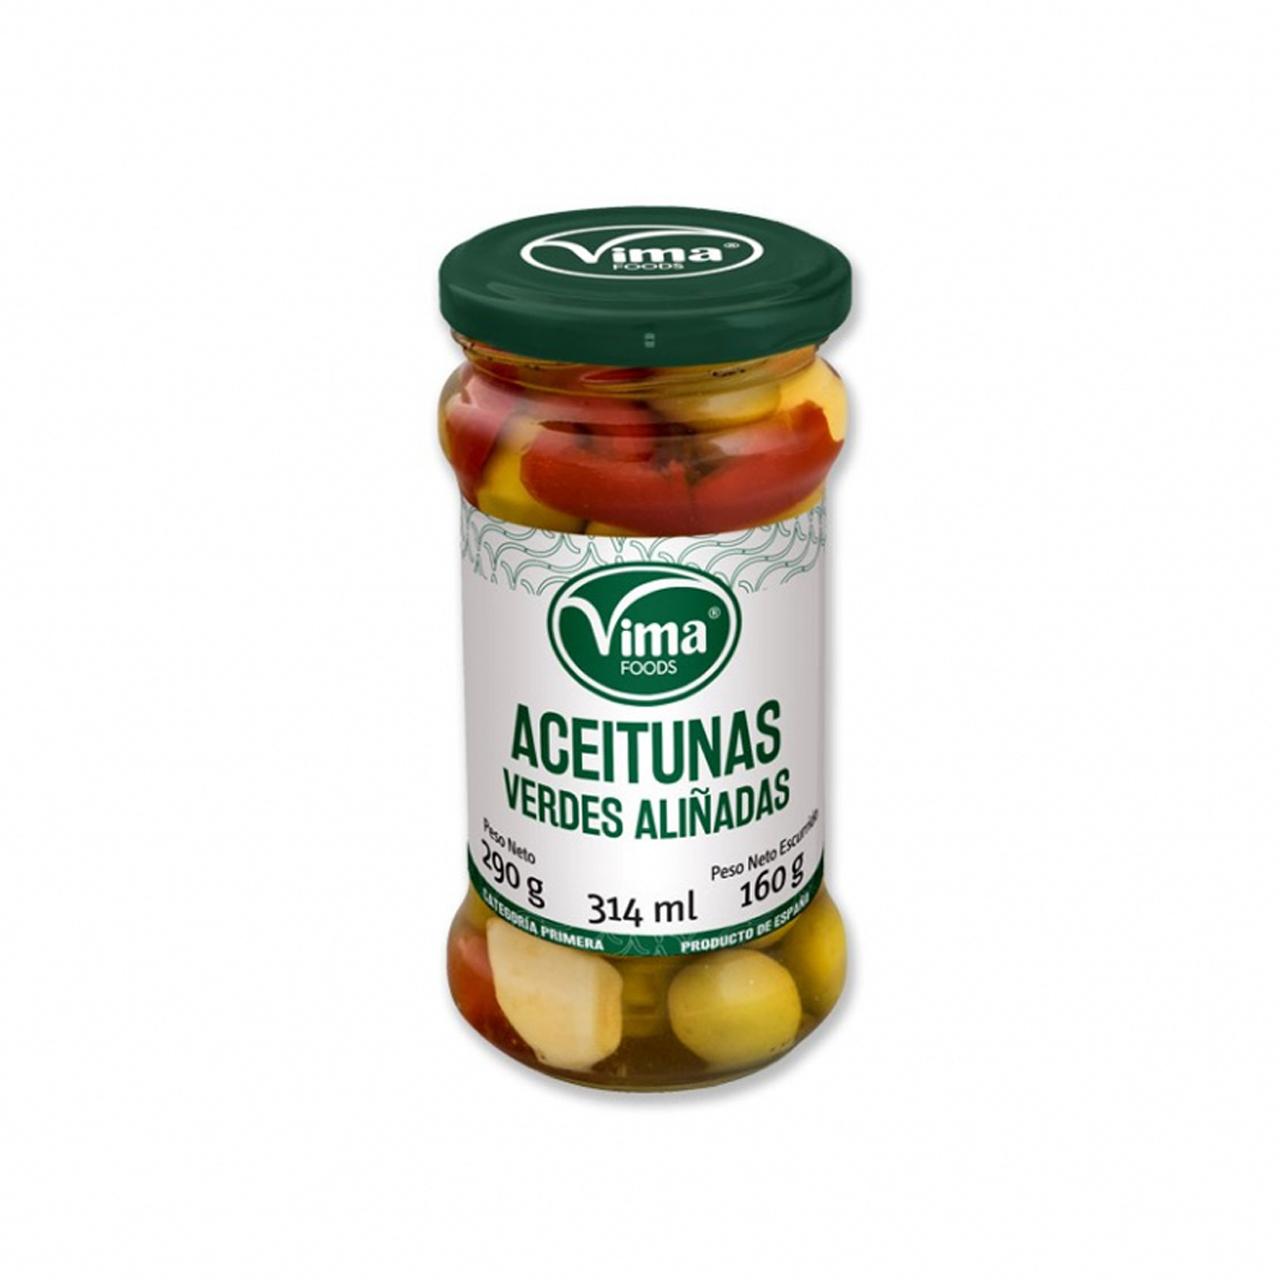 Aceitunas verdes aliñadas Vima Foods (290 g / 10.23 oz)